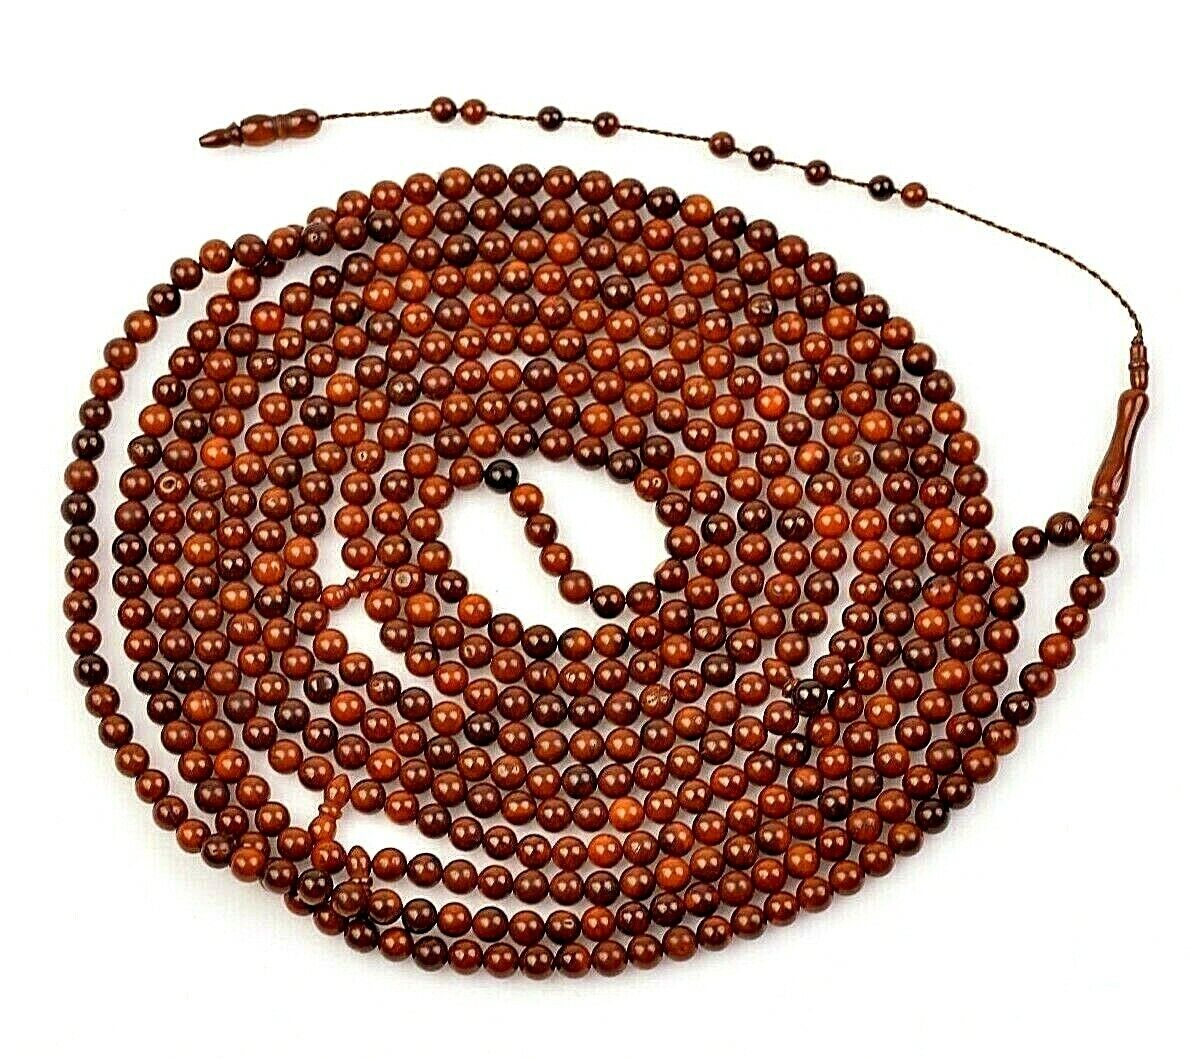 500 beads REAL Kuka Tree Islamic Prayer Tasbih Misbaha Rosary Tasbeeh 6mm LONG